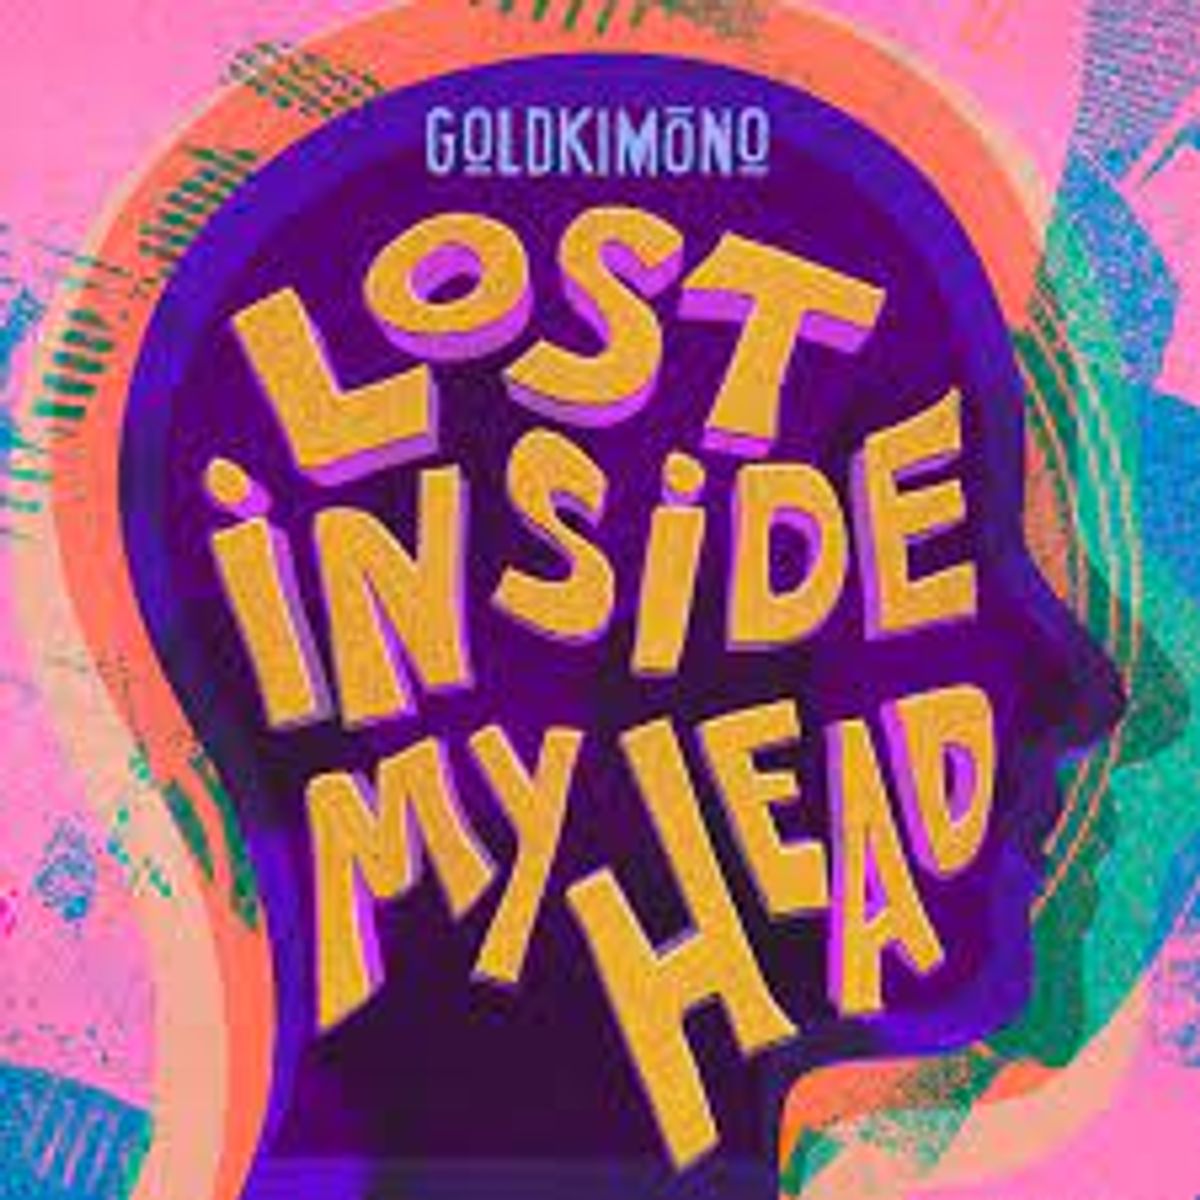 Goldkimono - Lost Inside My Head